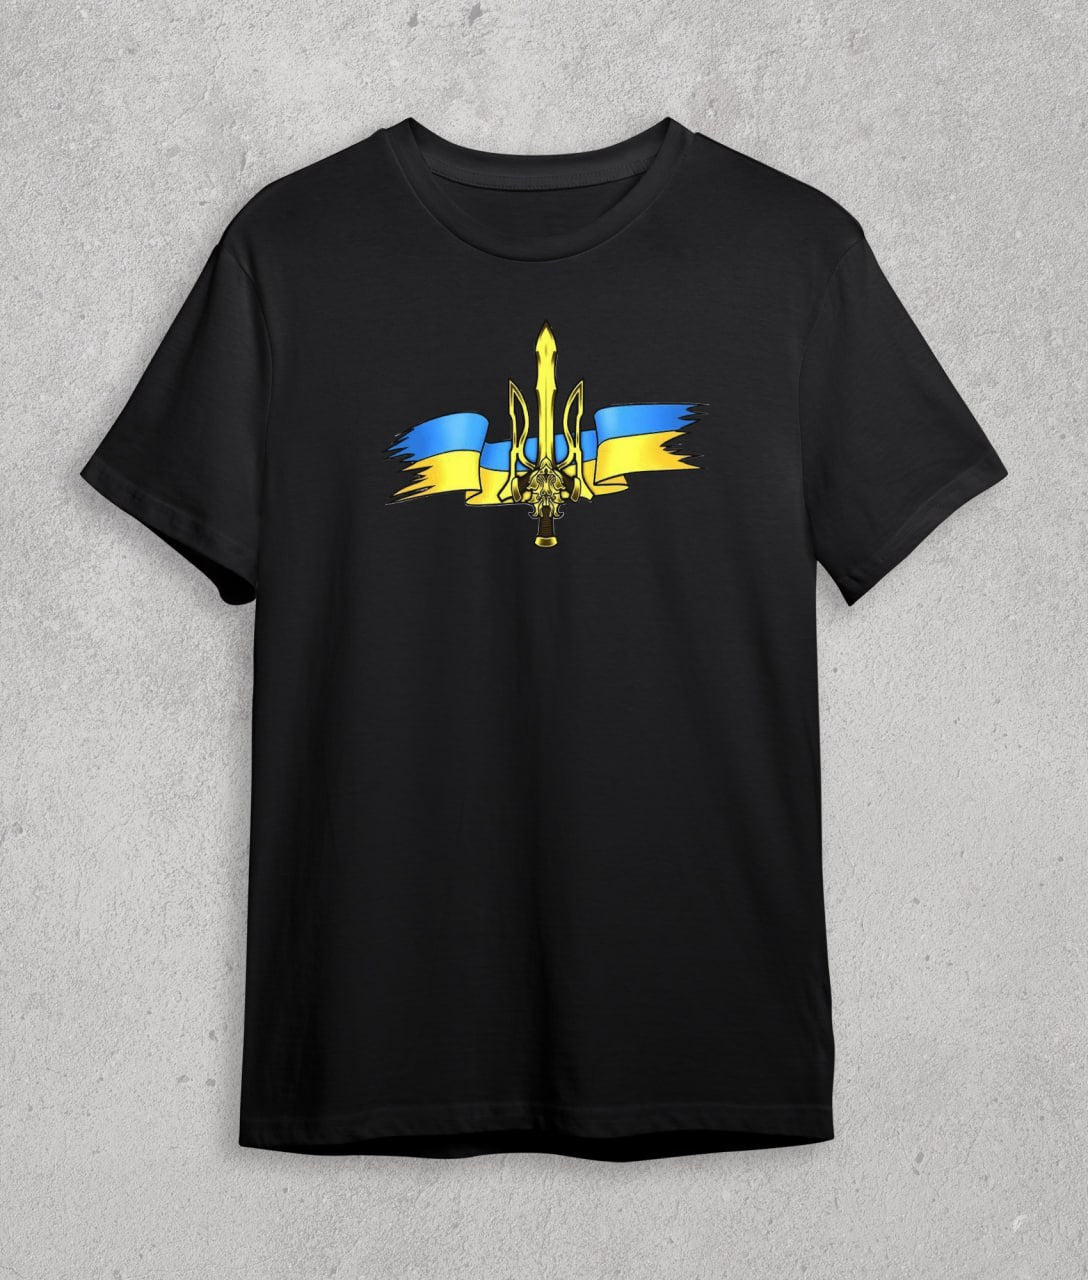 Футболка Український Герб (меч) 